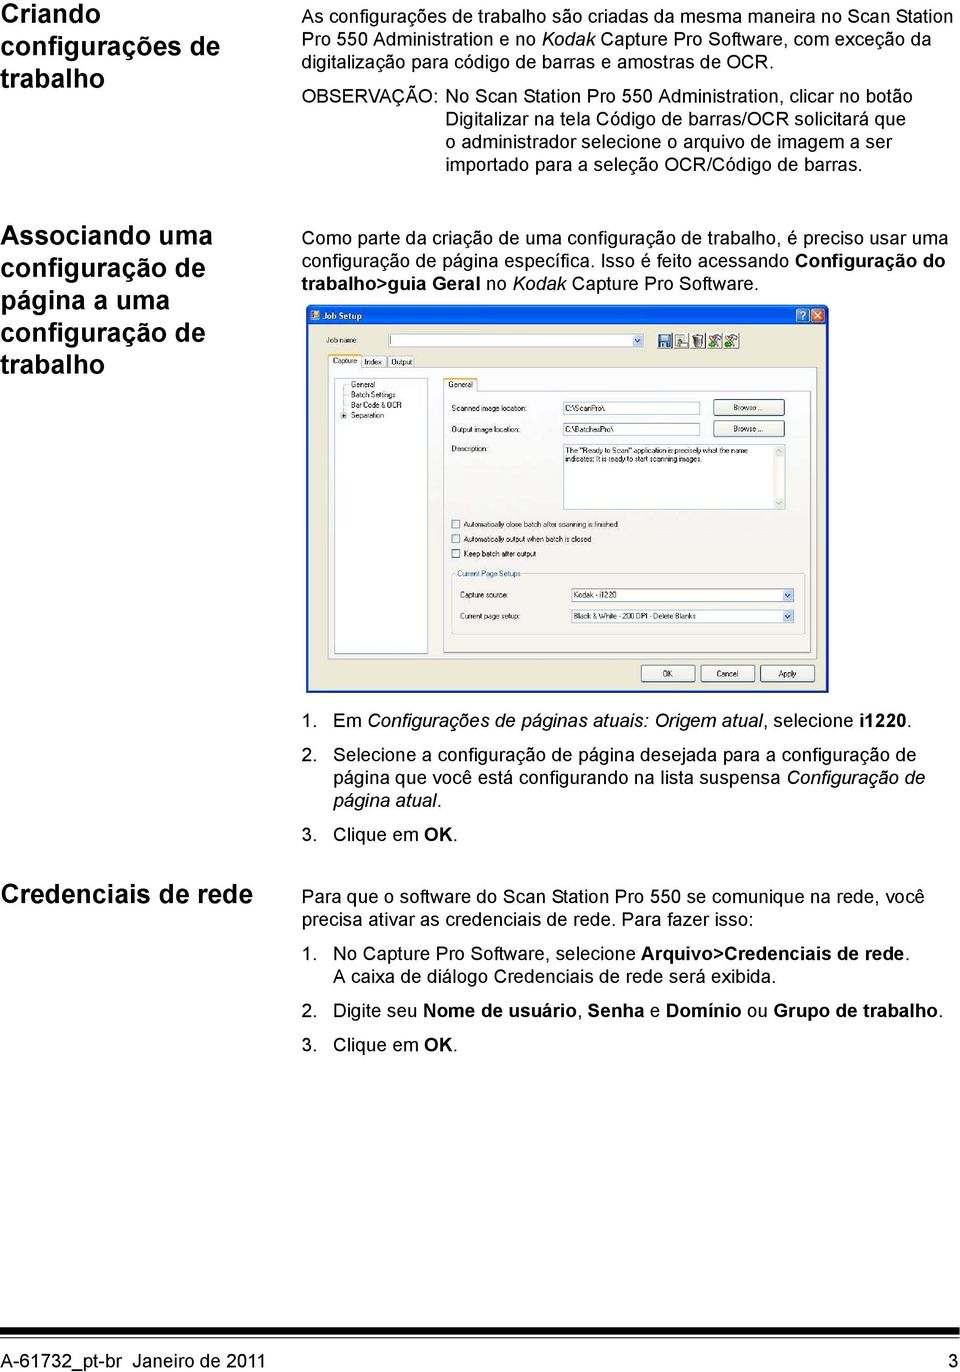 OBSERVAÇÃO: No Scan Station Pro 550 Administration, clicar no botão Digitalizar na tela Código de barras/ocr solicitará que o administrador selecione o arquivo de imagem a ser importado para a